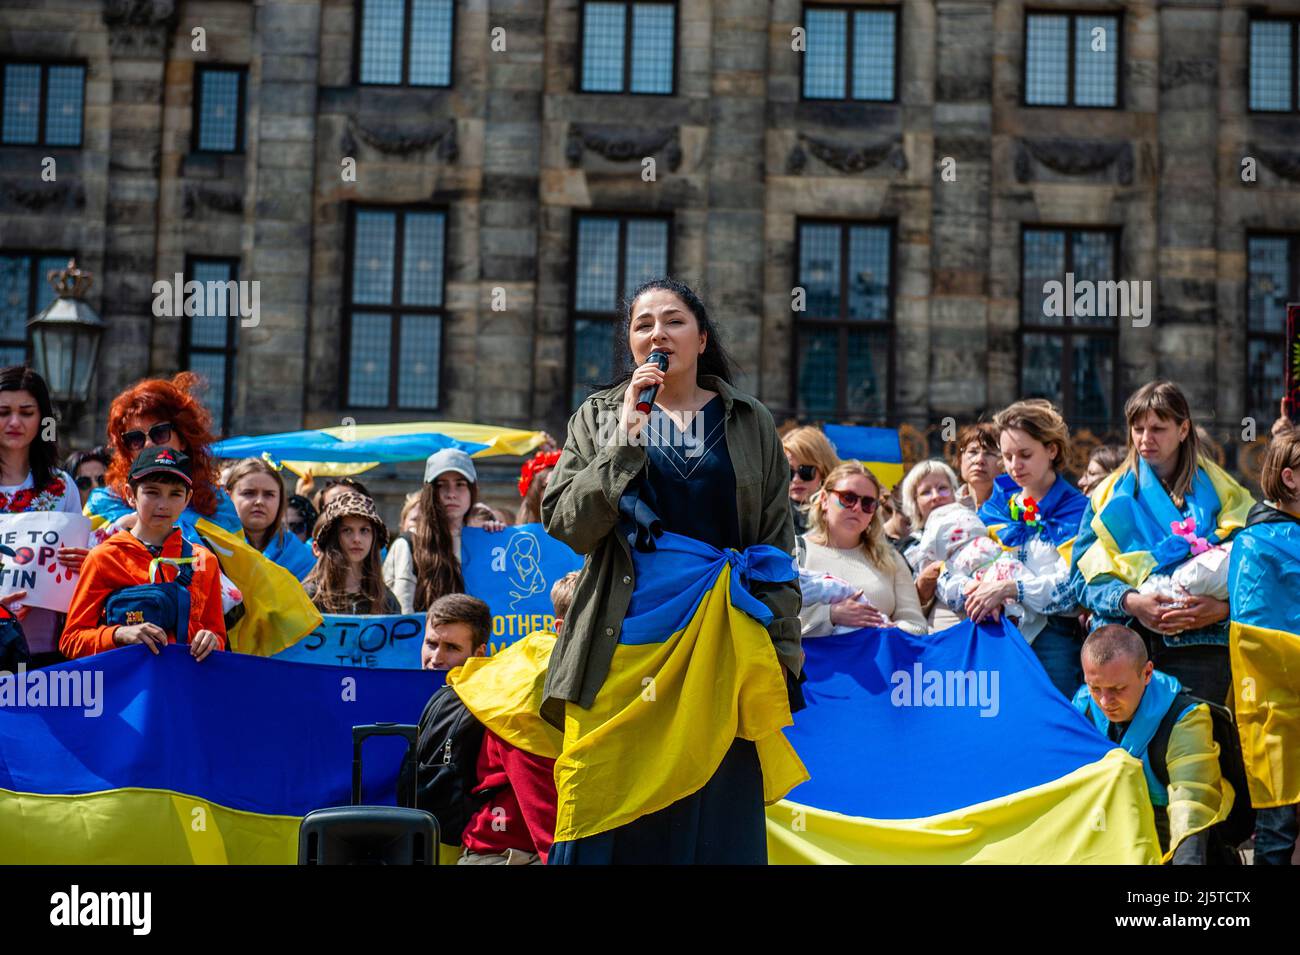 Während der Demonstration wird ein ukrainischer Sänger ein trauriges Lied über den Krieg in der Ukraine singen sehen. Die ukrainische Gemeinschaft in den Niederlanden, hauptsächlich Frauen und Kinder, versammelte sich im Zentrum der Stadt, um die Aufmerksamkeit der Welt auf die schrecklichen Tragödien der Kinder in der Ukraine zu lenken, die durch die russische Aggression verursacht wurden. Innerhalb von 21 Tagen nach dem Krieg in der Ukraine (Stand: März 16) wurden mindestens 108 Kinder beim Beschuss der russischen Streitkräfte getötet und mehr als 100 verletzt. Während des Protestes hielten einige der Frauen Puppen in einer weißen Decke mit gefälschten Blutflecken. (Foto von Stockfoto